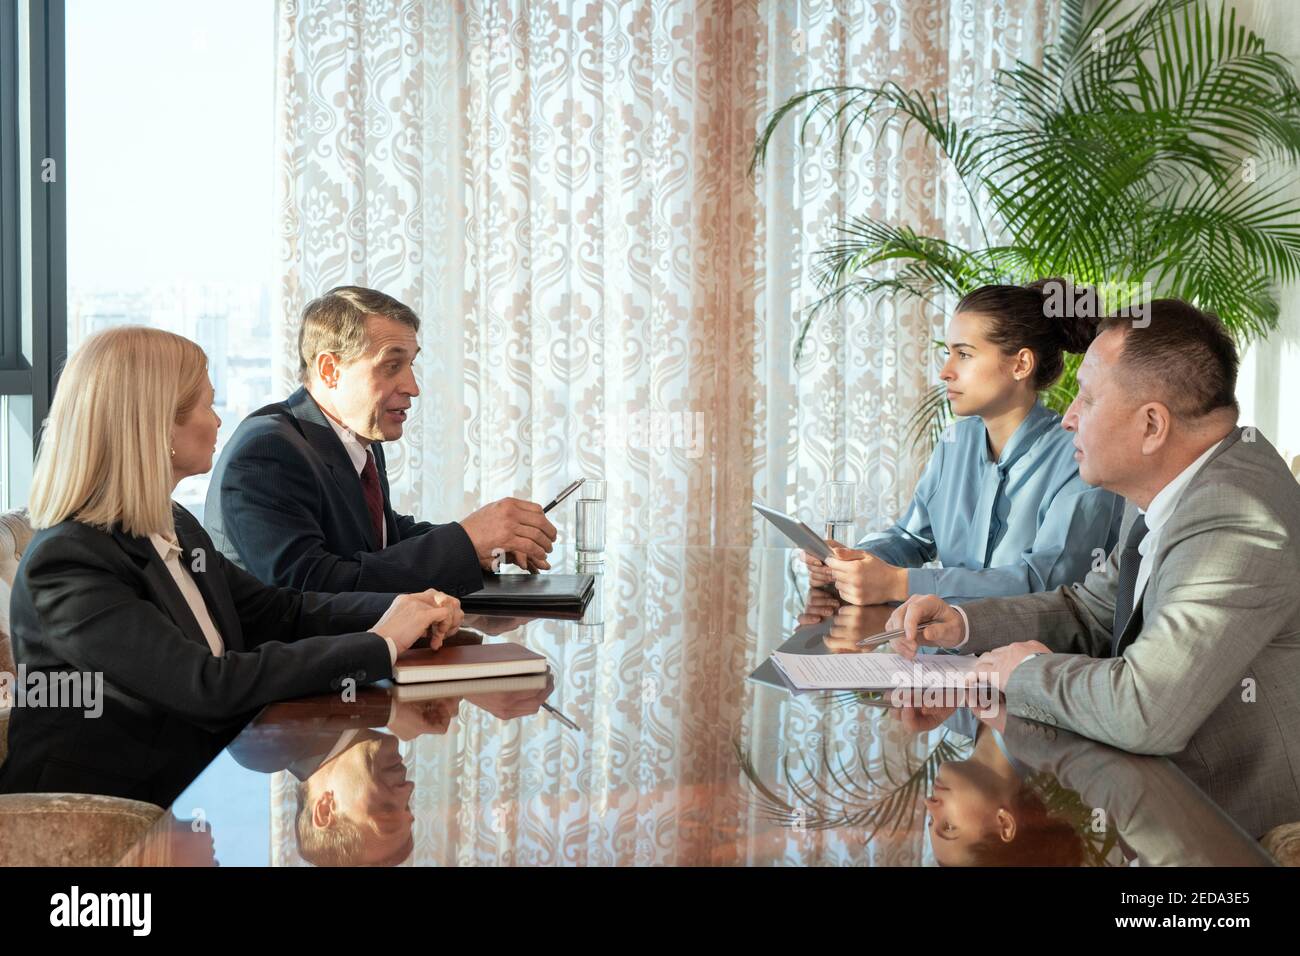 Des délégués masculins matures et leurs secrétaires élégants discutent des termes et conditions du contrat pendant la négociation lors d'une réunion dans la salle de réunion Banque D'Images